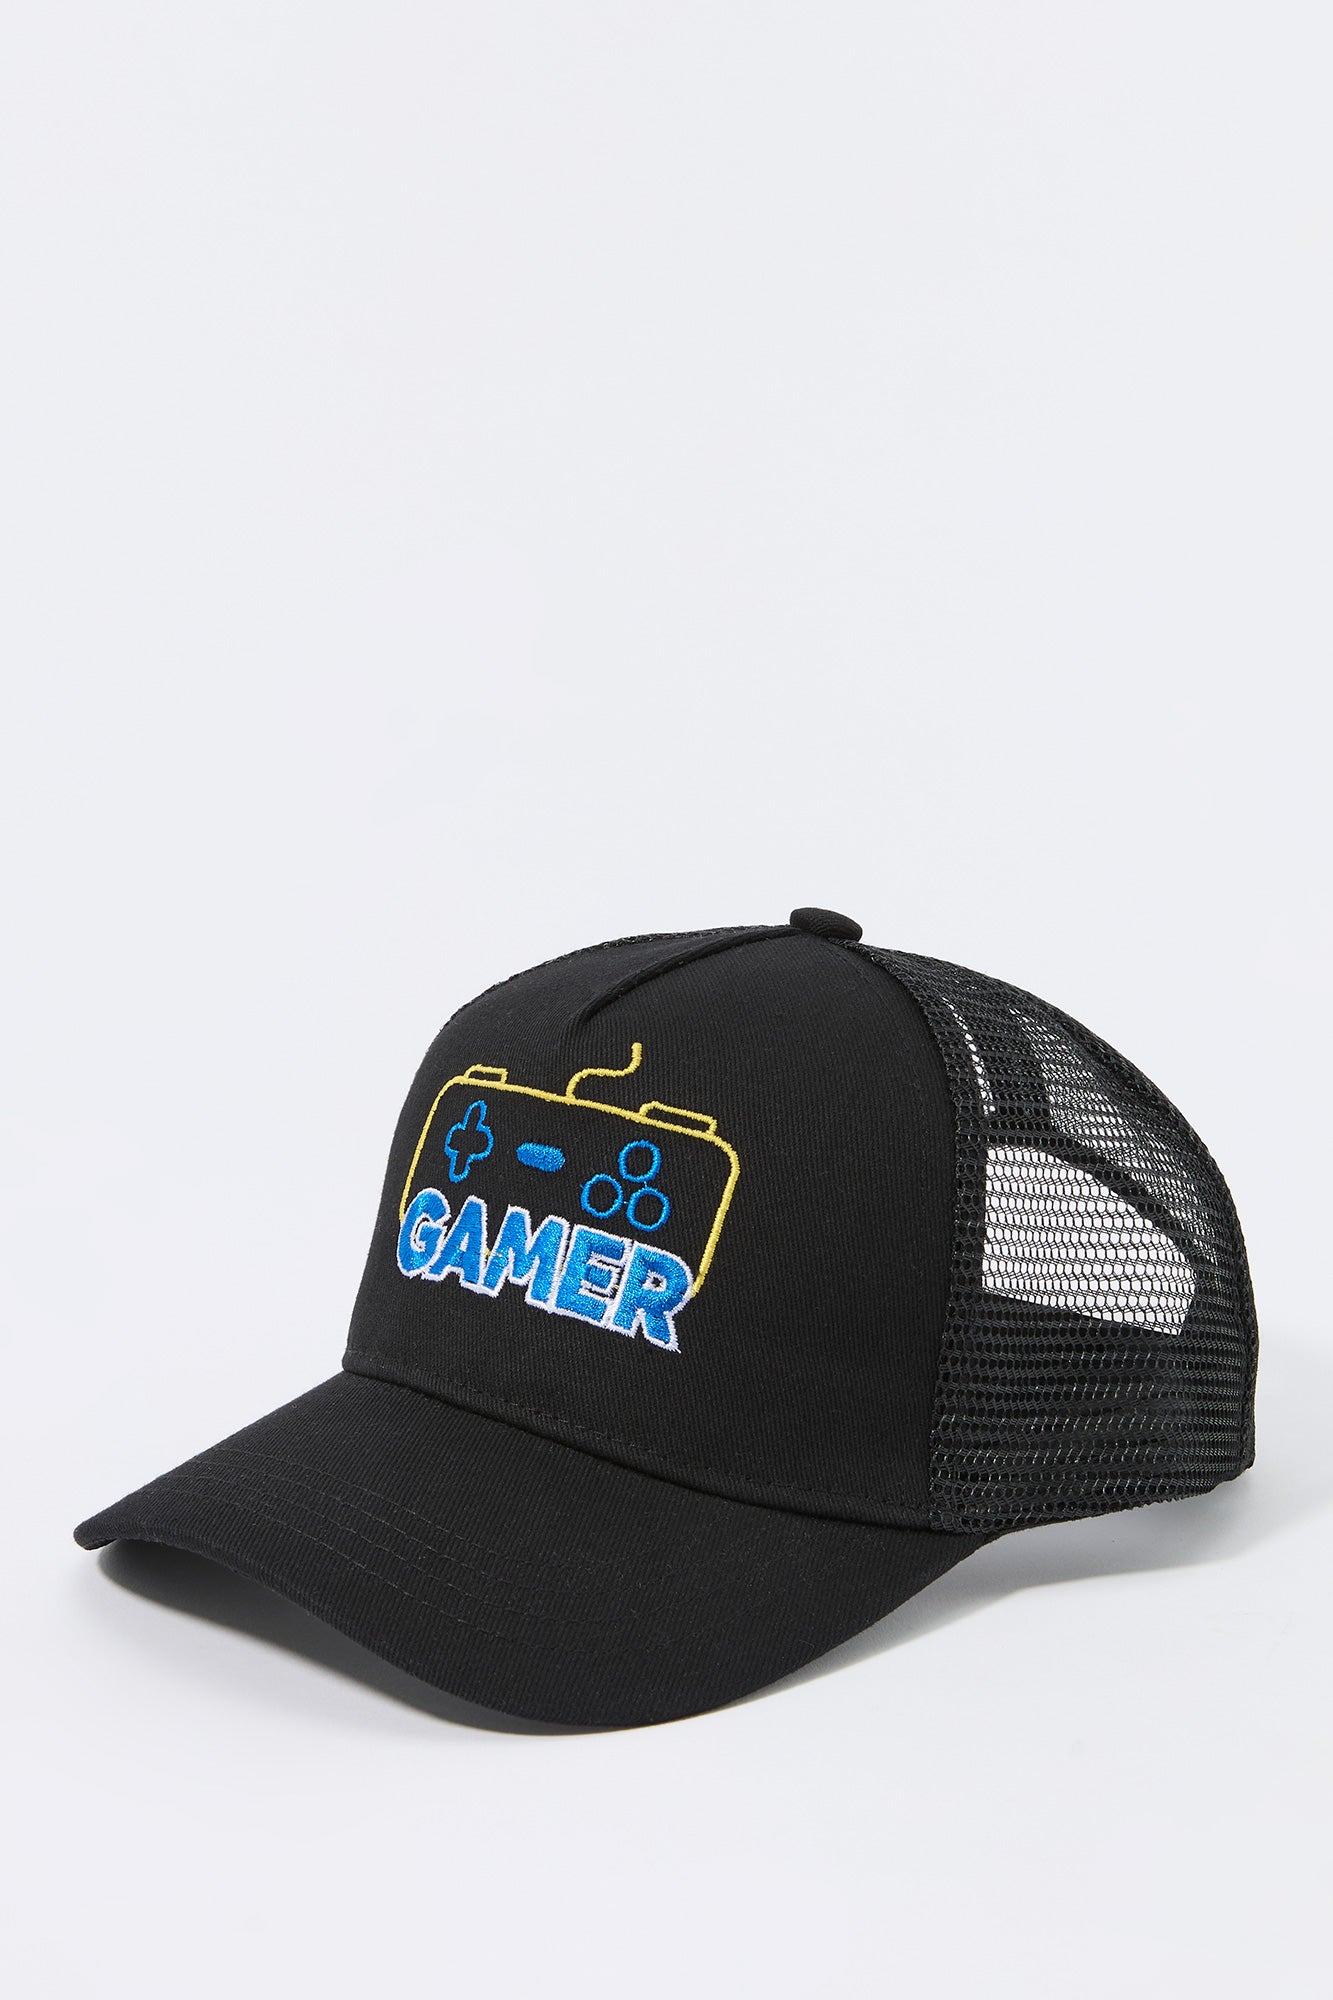 Boys Gamer Chenille Embroidered Mesh Baseball Hat